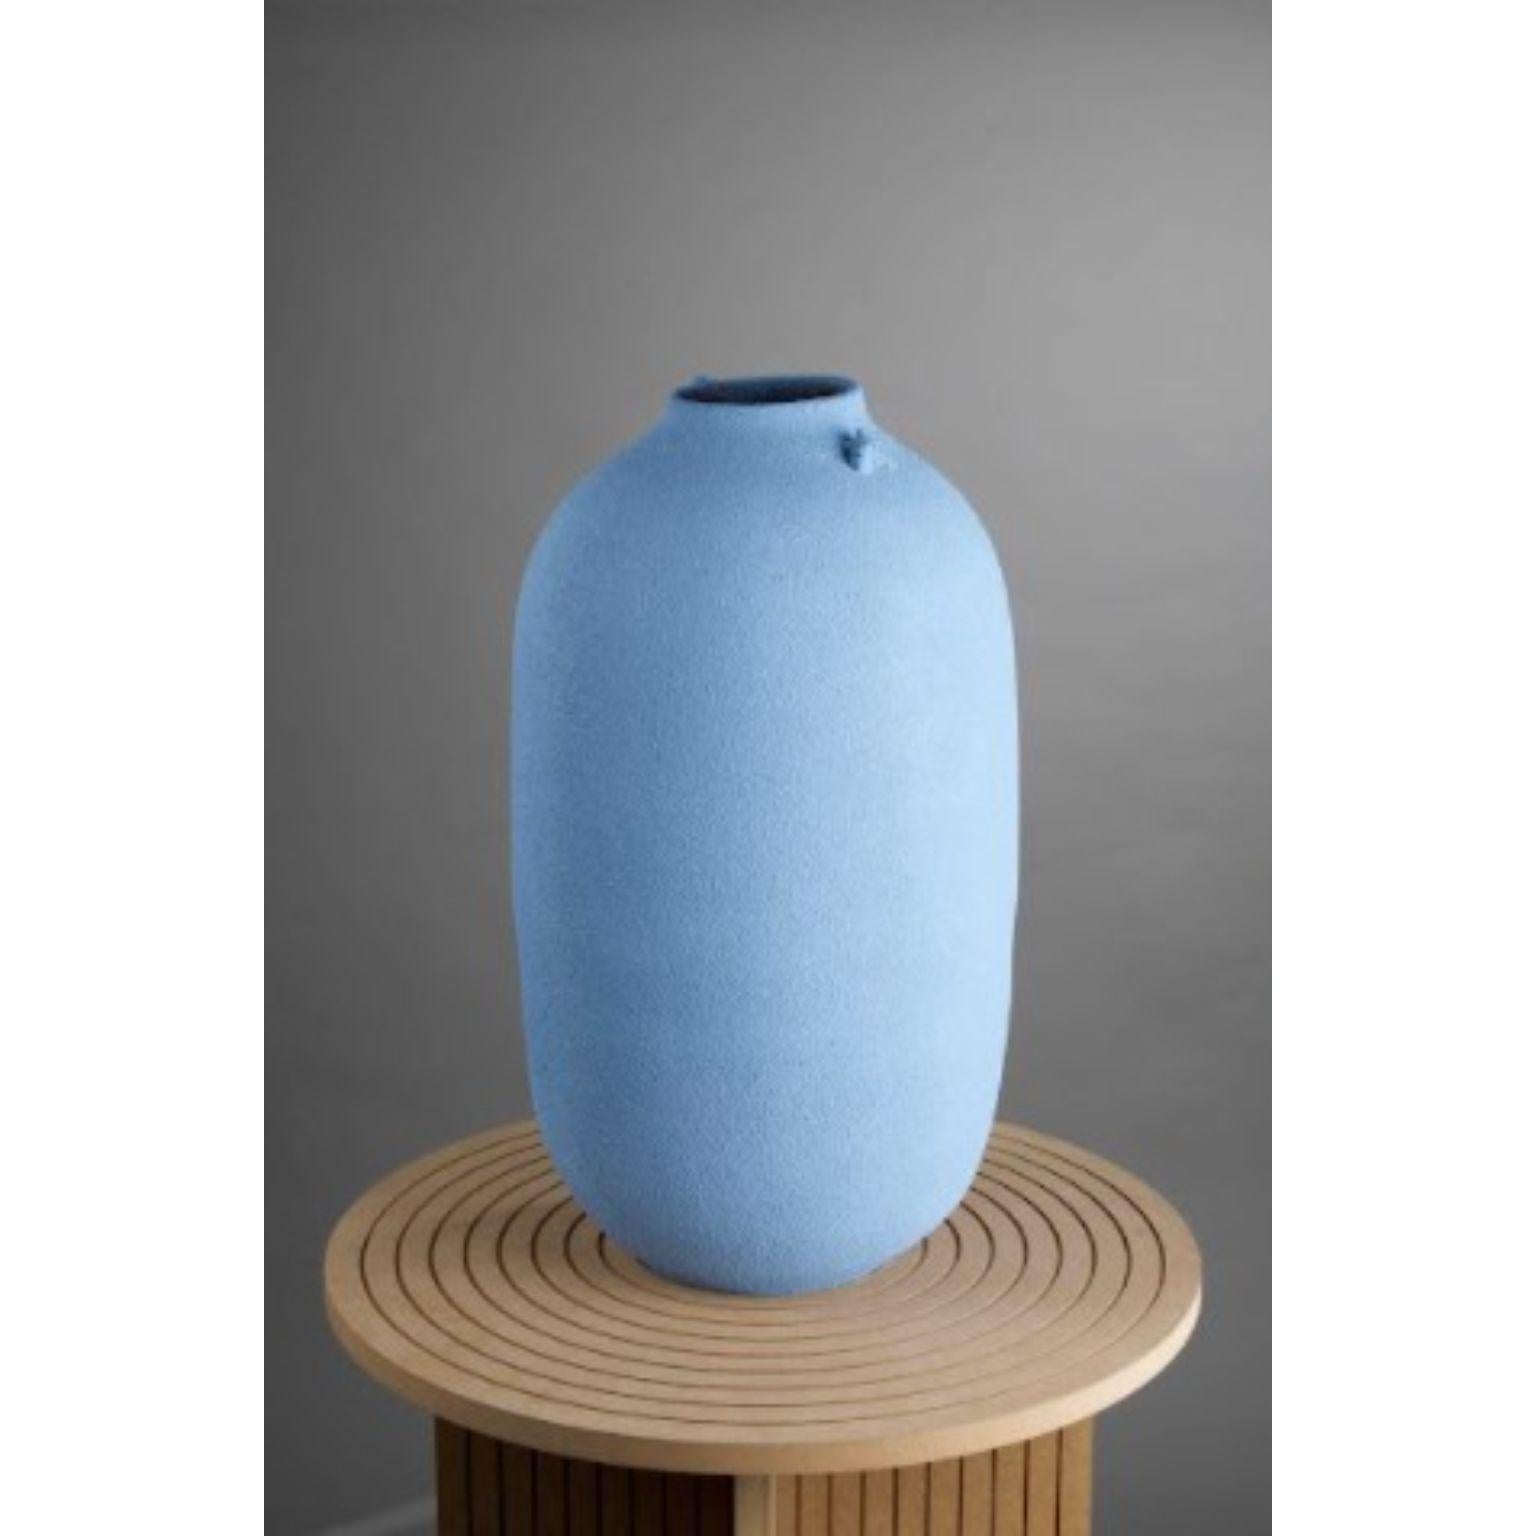 MaxiVases delftblaue vase von Roman Sedina
Abmessungen: D 30cm x H 60 cm
MATERIAL: Porzellan

Roman Sedina stammt aus der südböhmischen (Europaregion) Stadt Bechyne, die als Keramikzentrum der Nachkriegszeit bekannt ist. Sein Portfolio umfasst ein